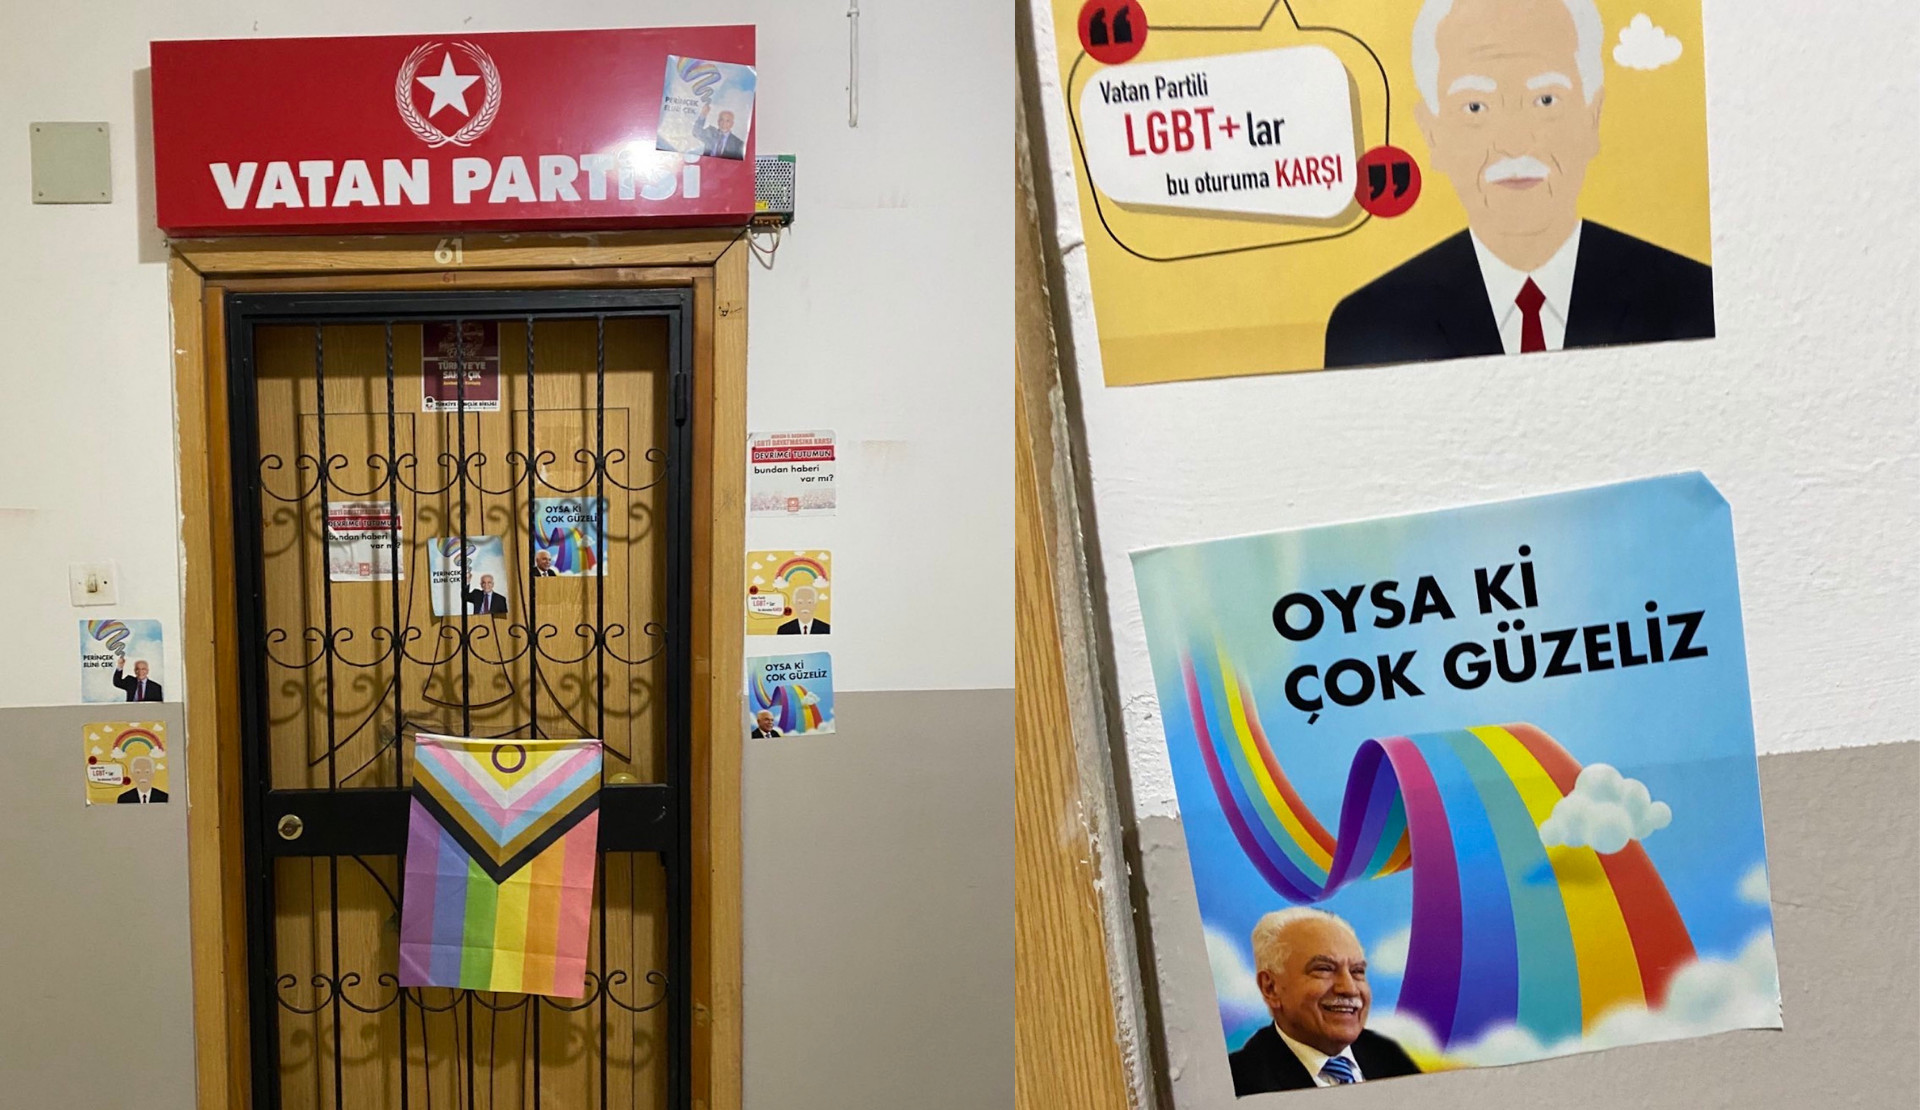 Mersinli LGBTİ+’lar Vatan Partisi’ni ziyaret etti: Perinçek, elini çek! | Kaos GL - LGBTİ+ Haber Portalı Haber